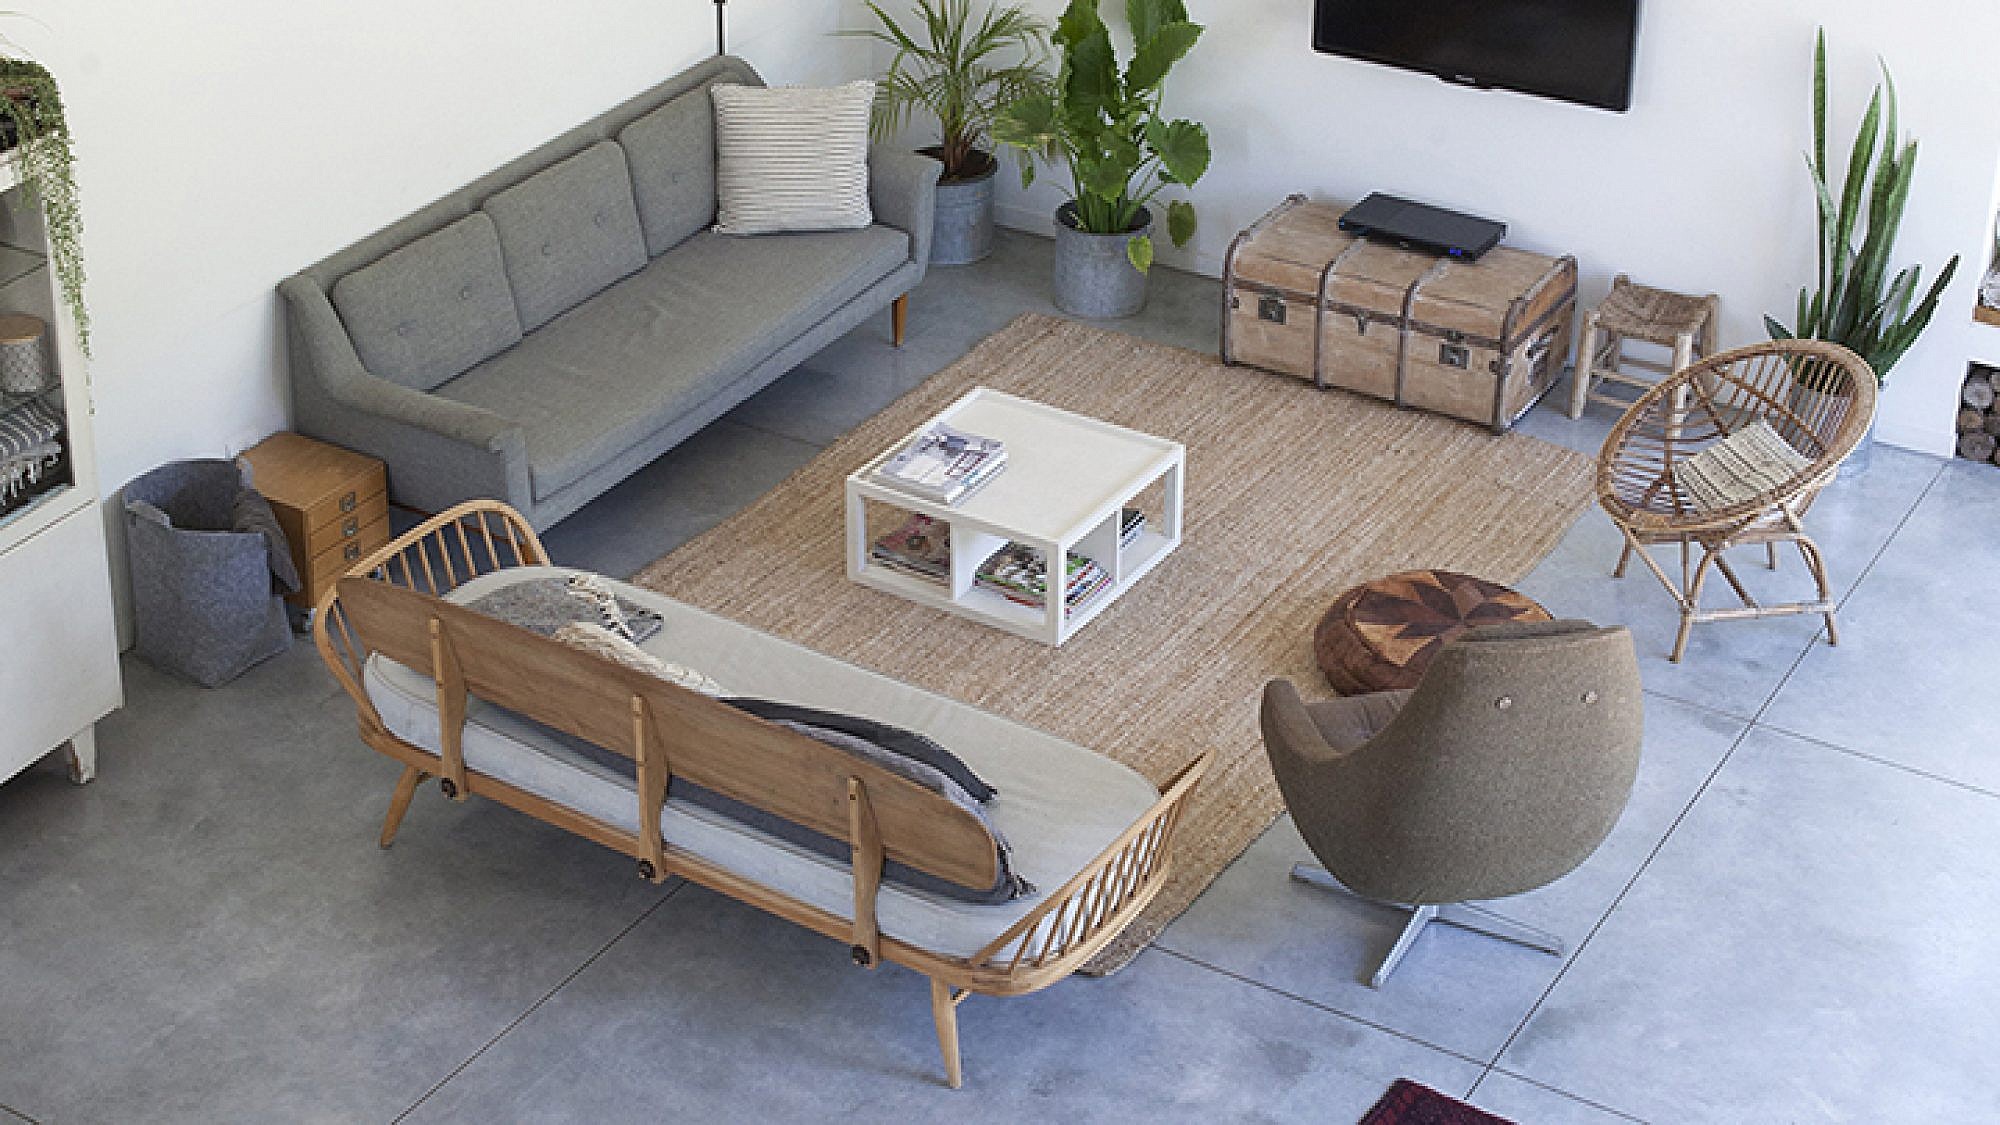 הסלון מדגים היטב את "האני מאמין" של בעלי הבית. הוא מורכב מאלמנטים של ליקוט והתאמה בסגנון שמאפיין את האתר והבלוג של הביתה | צילום: הגר דופלט